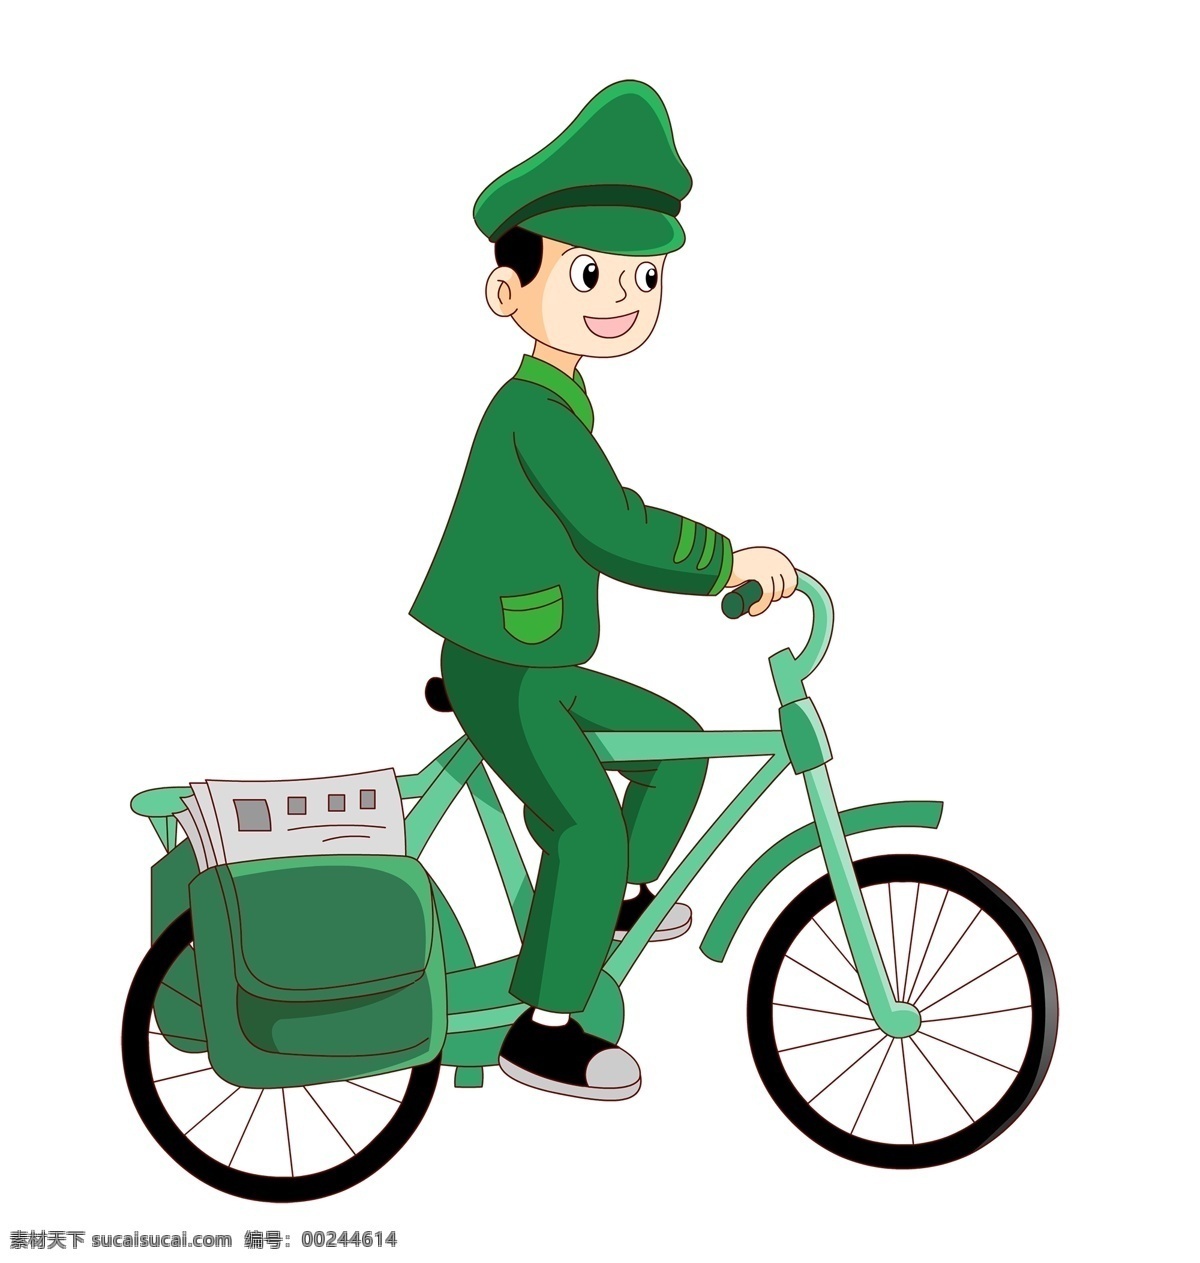 信 邮递员 叔叔 卡通 形象 邮政叔叔 邮递员叔叔 邮政自行车 绿色自行车 高兴的邮递员 送信